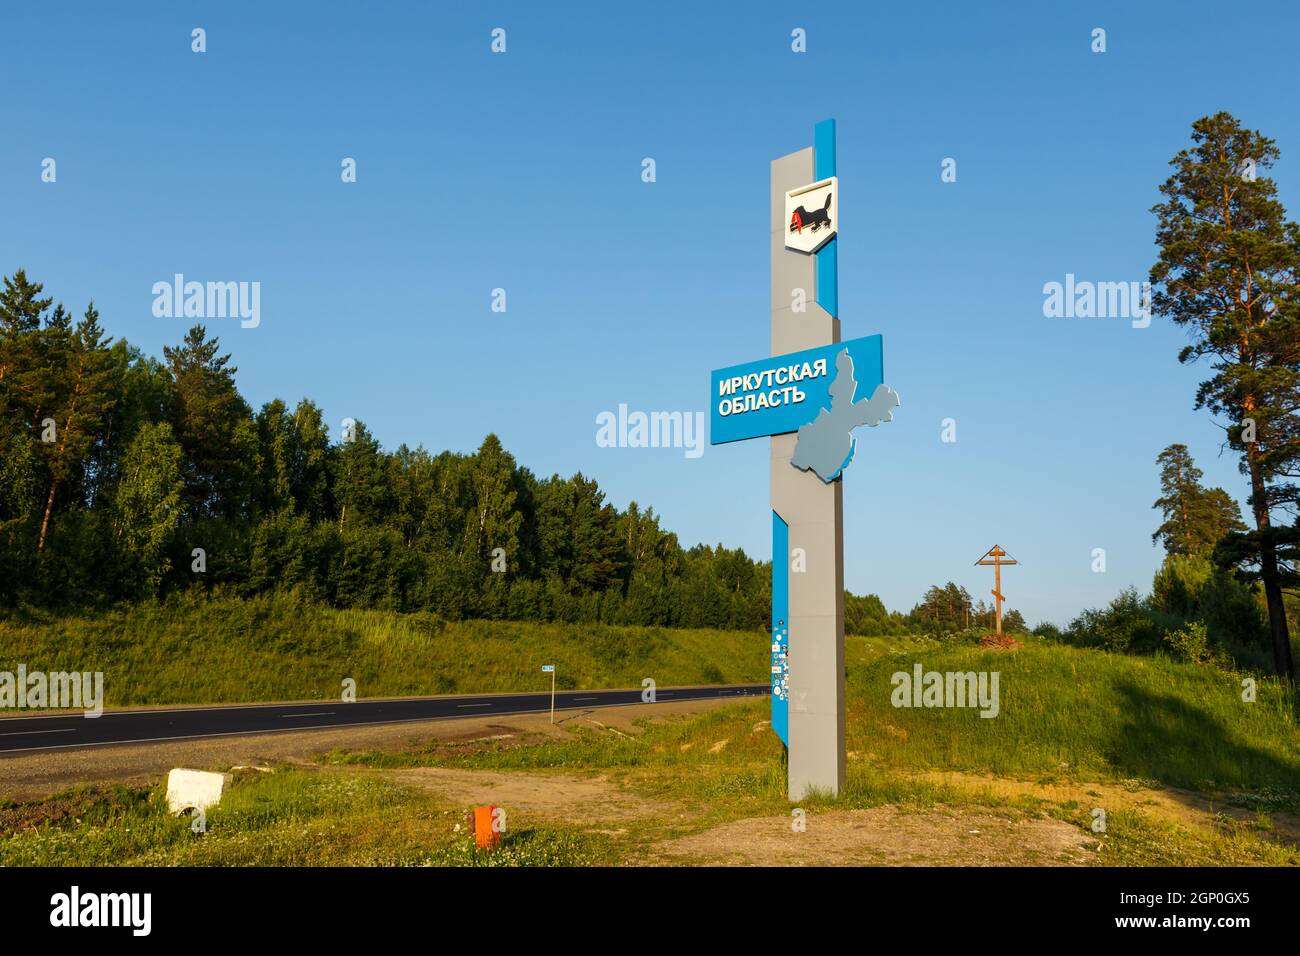 Regione di Irkutsk, Russia - 5 luglio 2021: Ingresso regione di Irkutsk. Un cartello stradale sul confine della regione di Irkutsk e del territorio di Krasnoyarsk. Foto Stock